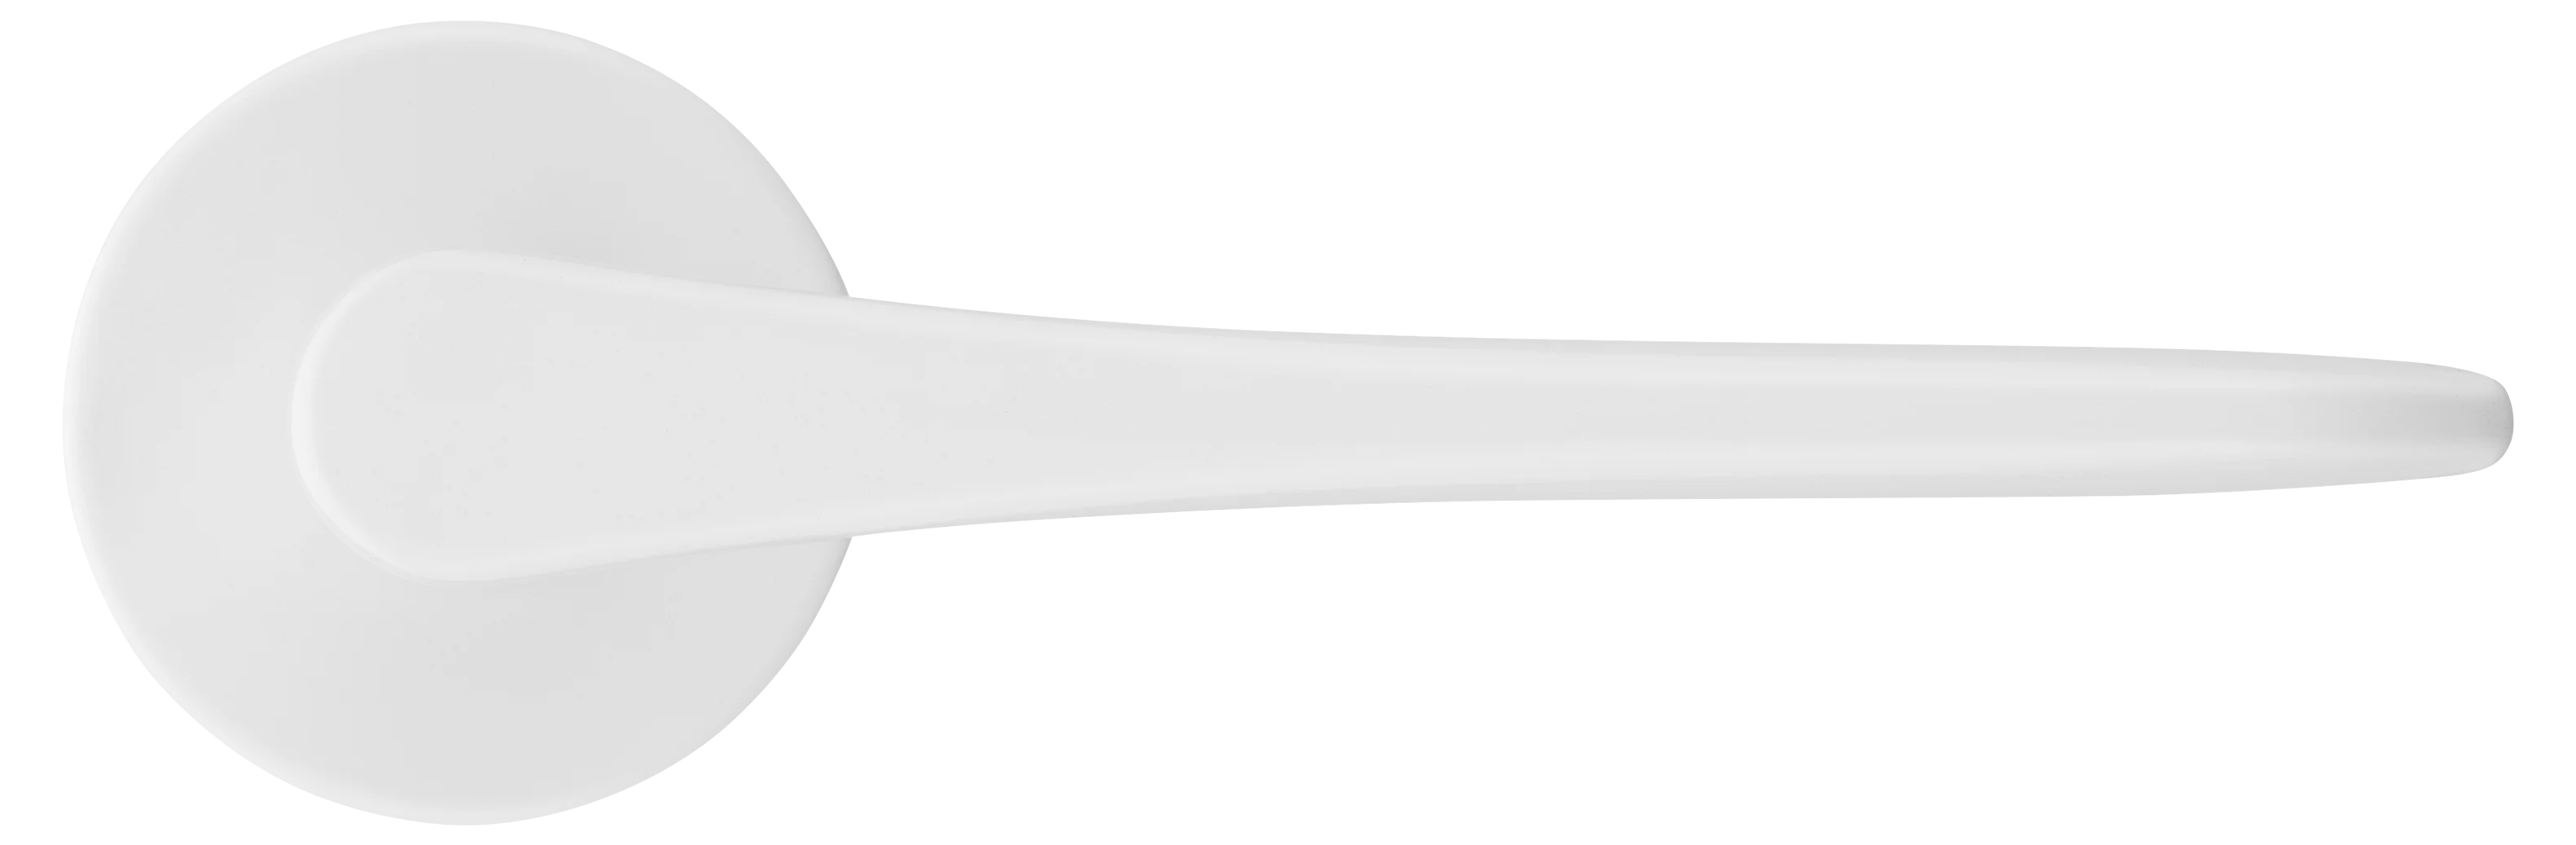 AULA R5 BIA, ручка дверная на розетке 7мм, цвет -  белый фото купить в Твери